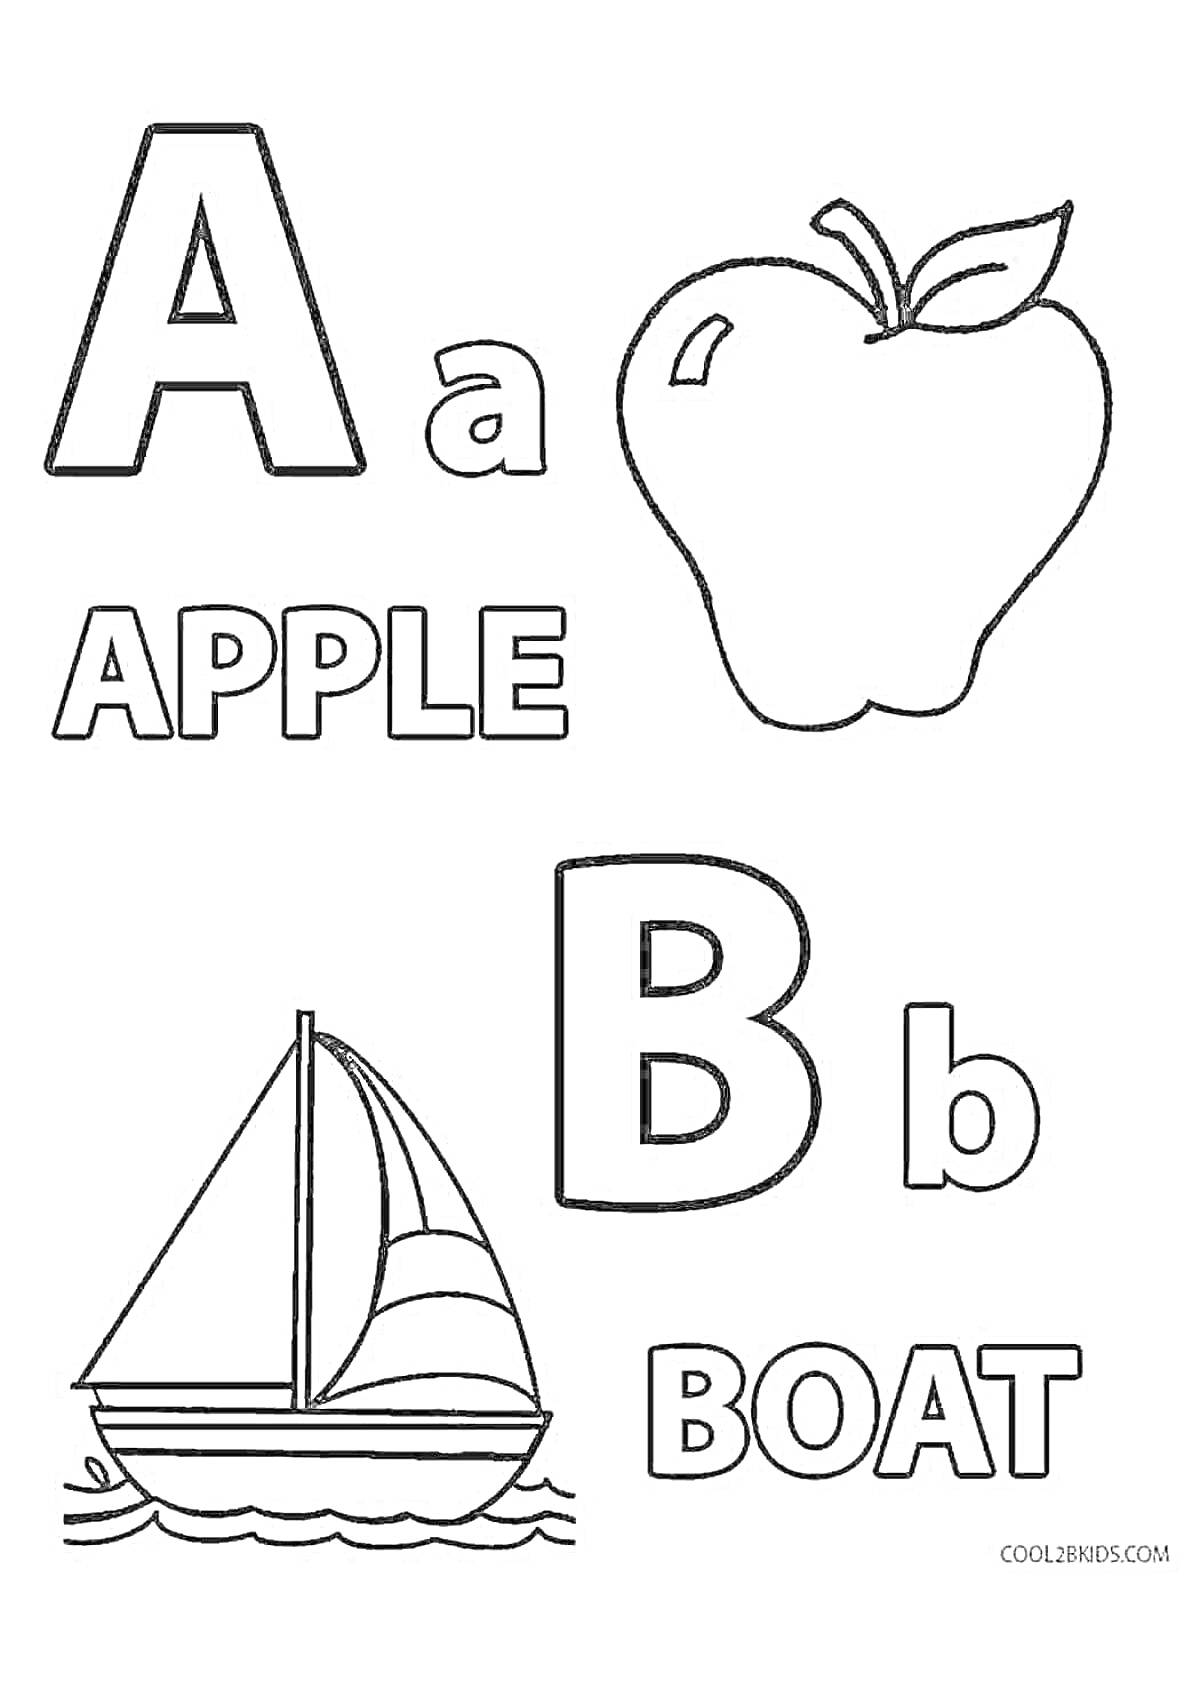 Раскраска Алфавит ЛОР:A для яблока и B для лодки с изображениями яблока и парусной лодки.